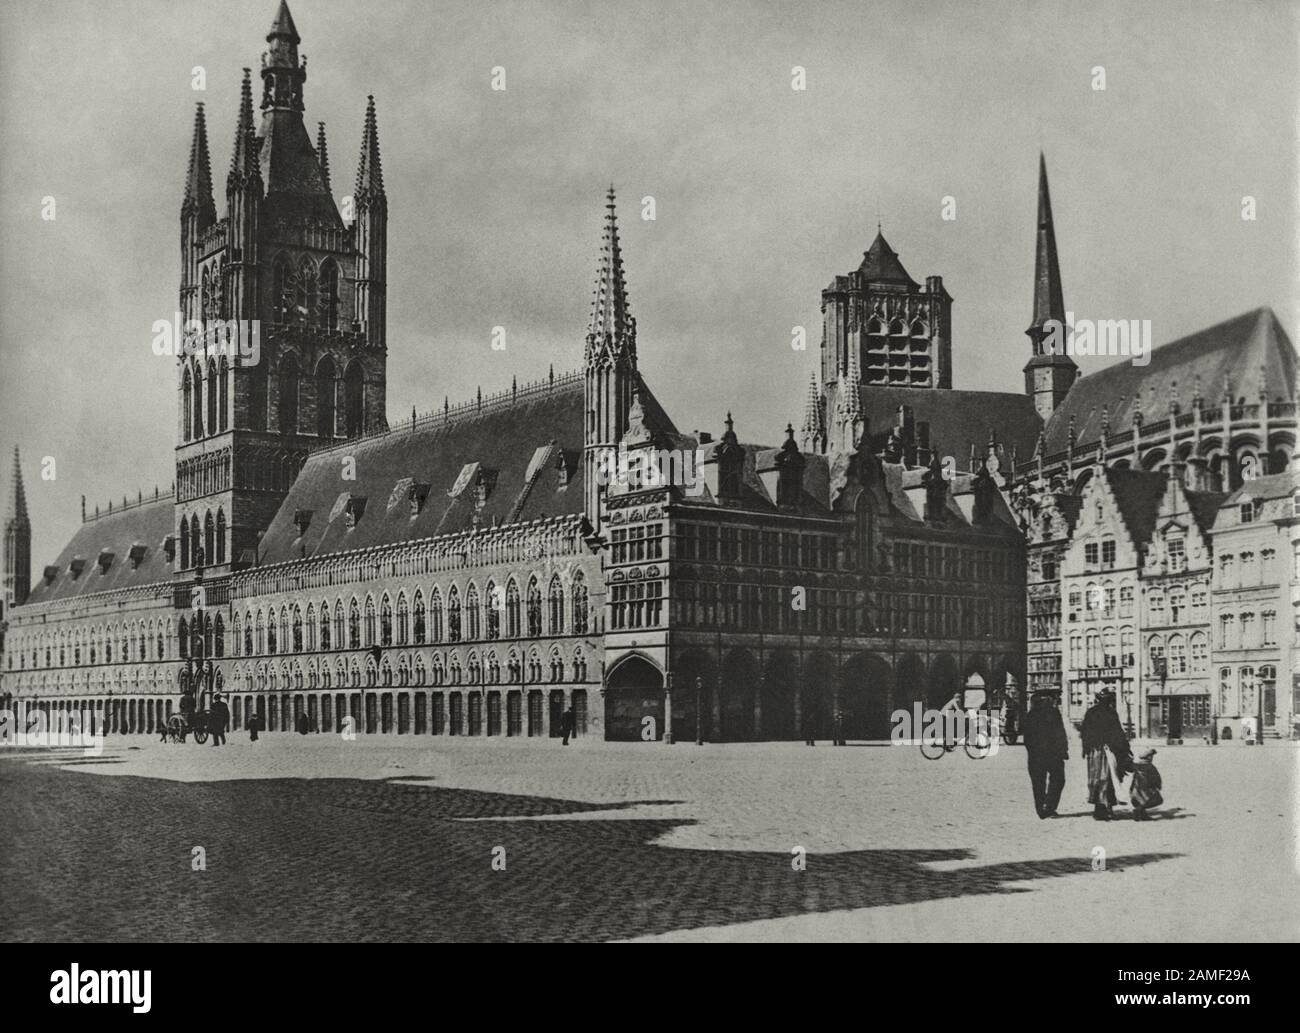 Les Halles De Tissu à la Grote Markt, la place centrale de la ville. Ypres, Flandre Occidentale, Belgique. 1912 Banque D'Images